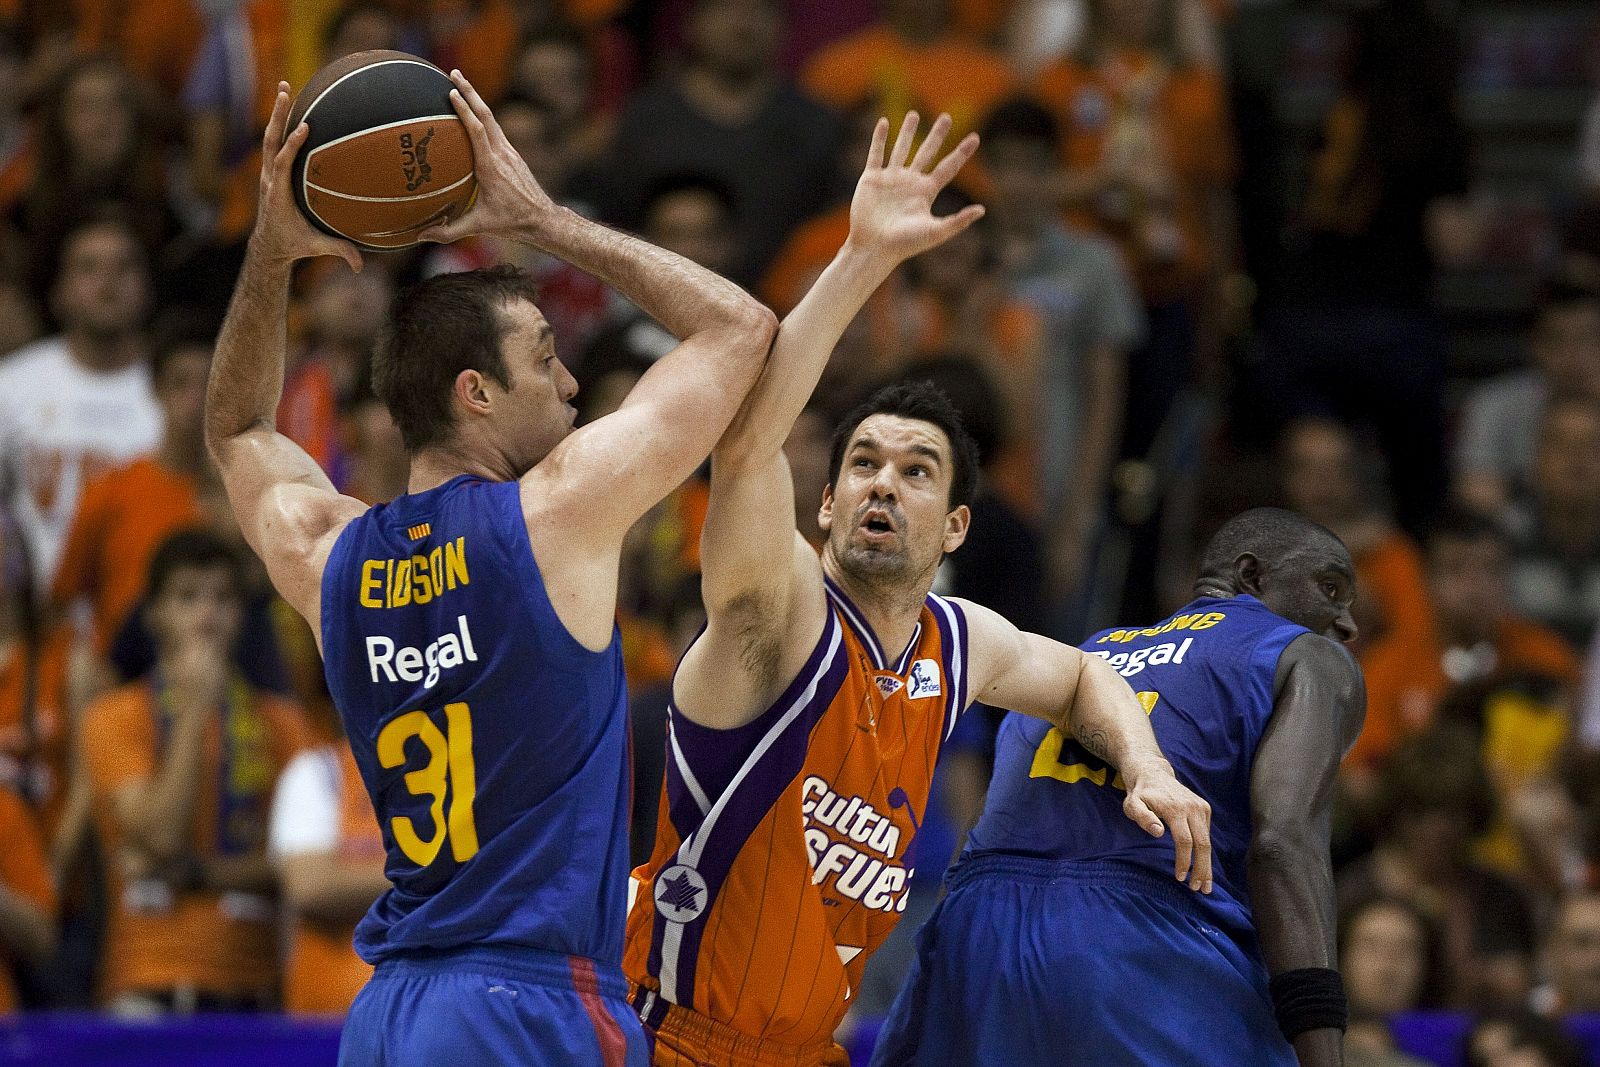 El alero estadounidense del FC Barcelona Regal, Chuck Edison, conduce el balón frente al escolta del Valencia Basket, Rafa Martinez.